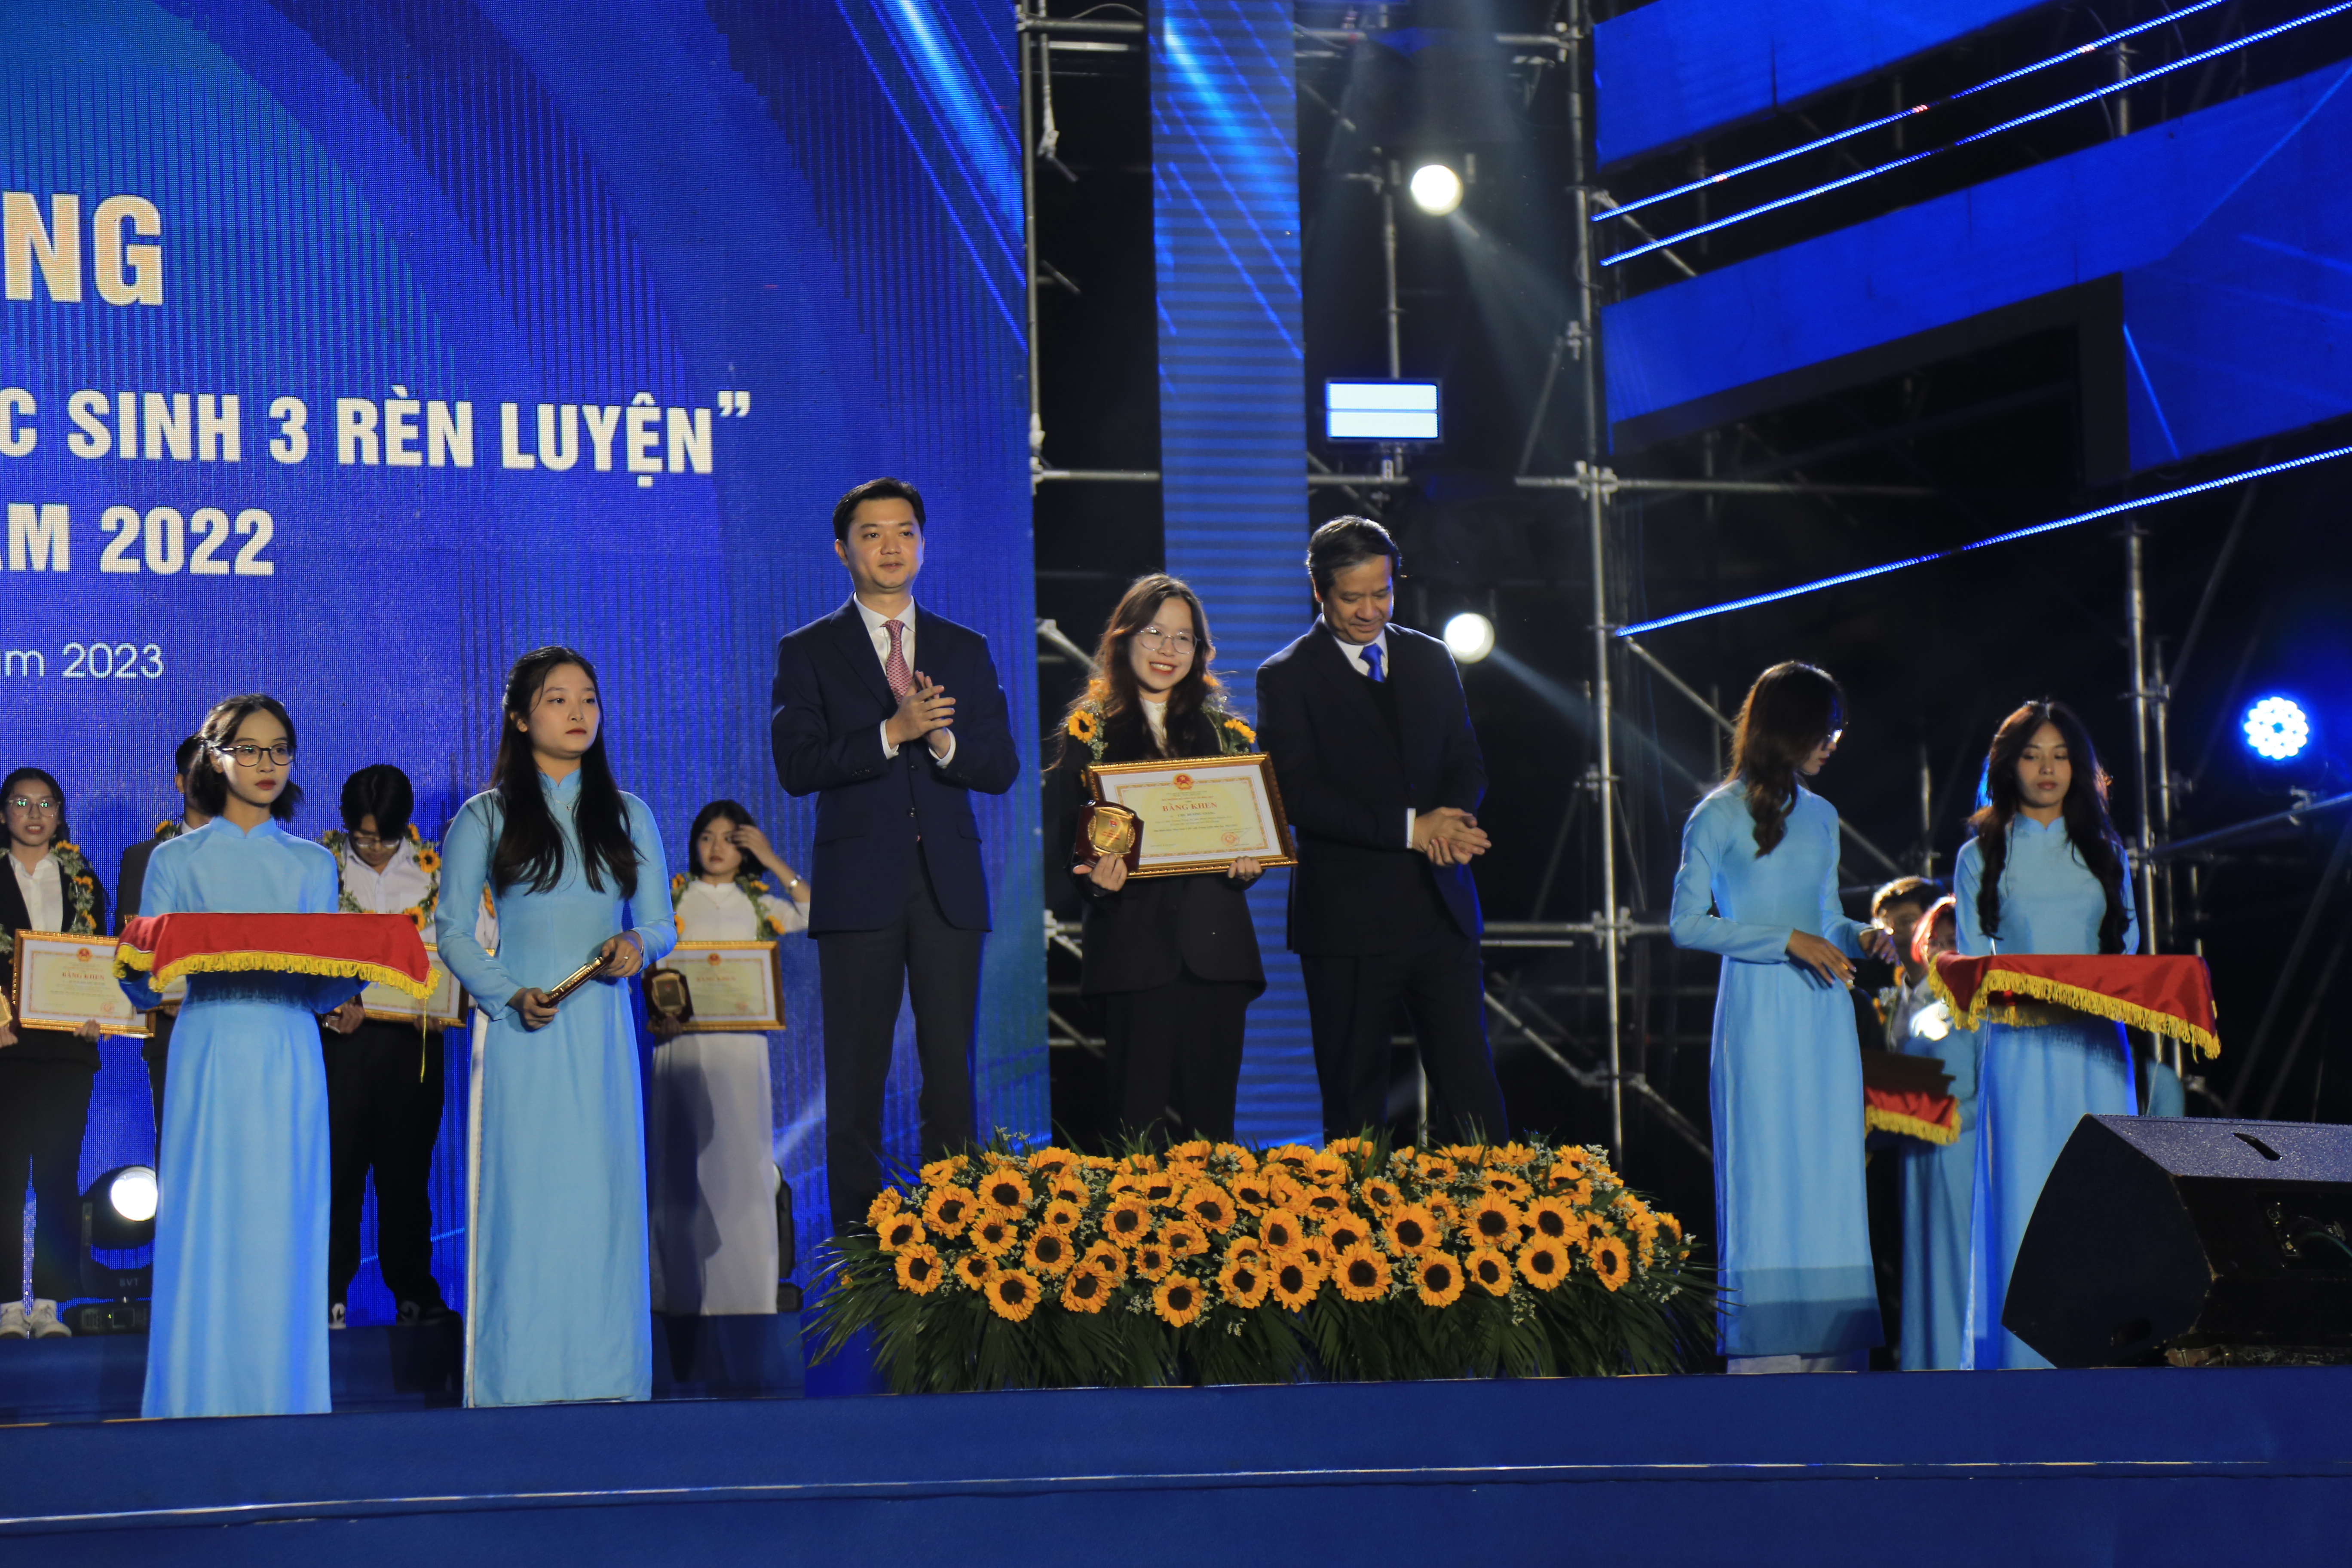 Chu Hương Giang (Chuyên Anh 19-22) đạt danh hiệu “Học sinh 3 tốt” cấp trung ương năm 2022